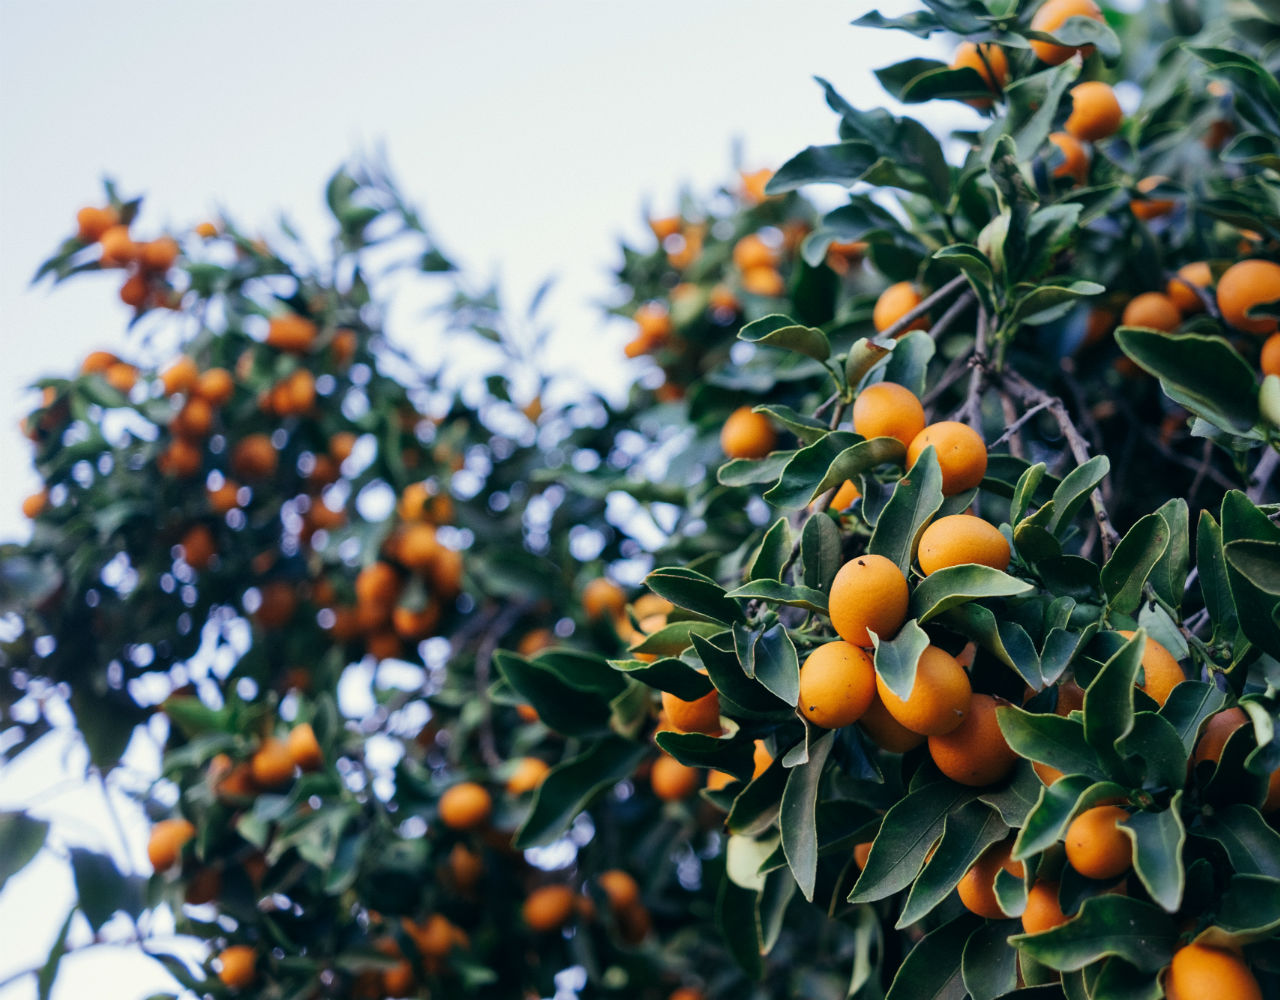 Οικογένεια Μέρλιν: Από τα πορτοκάλια στα υποβρύχια